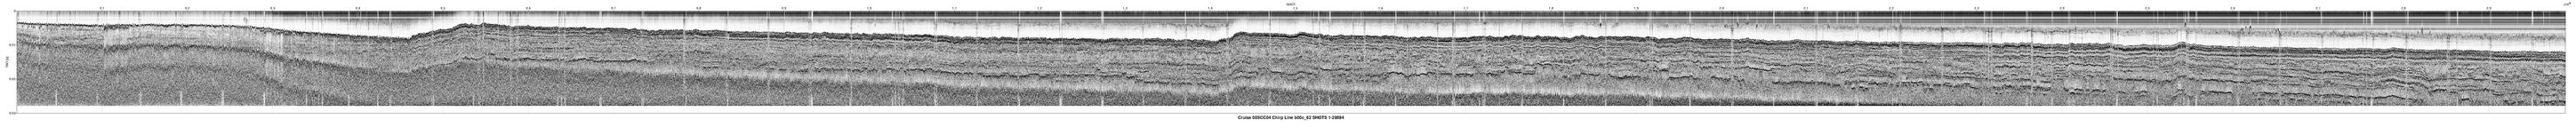 00SCC04 b00c_62 seismic profile image